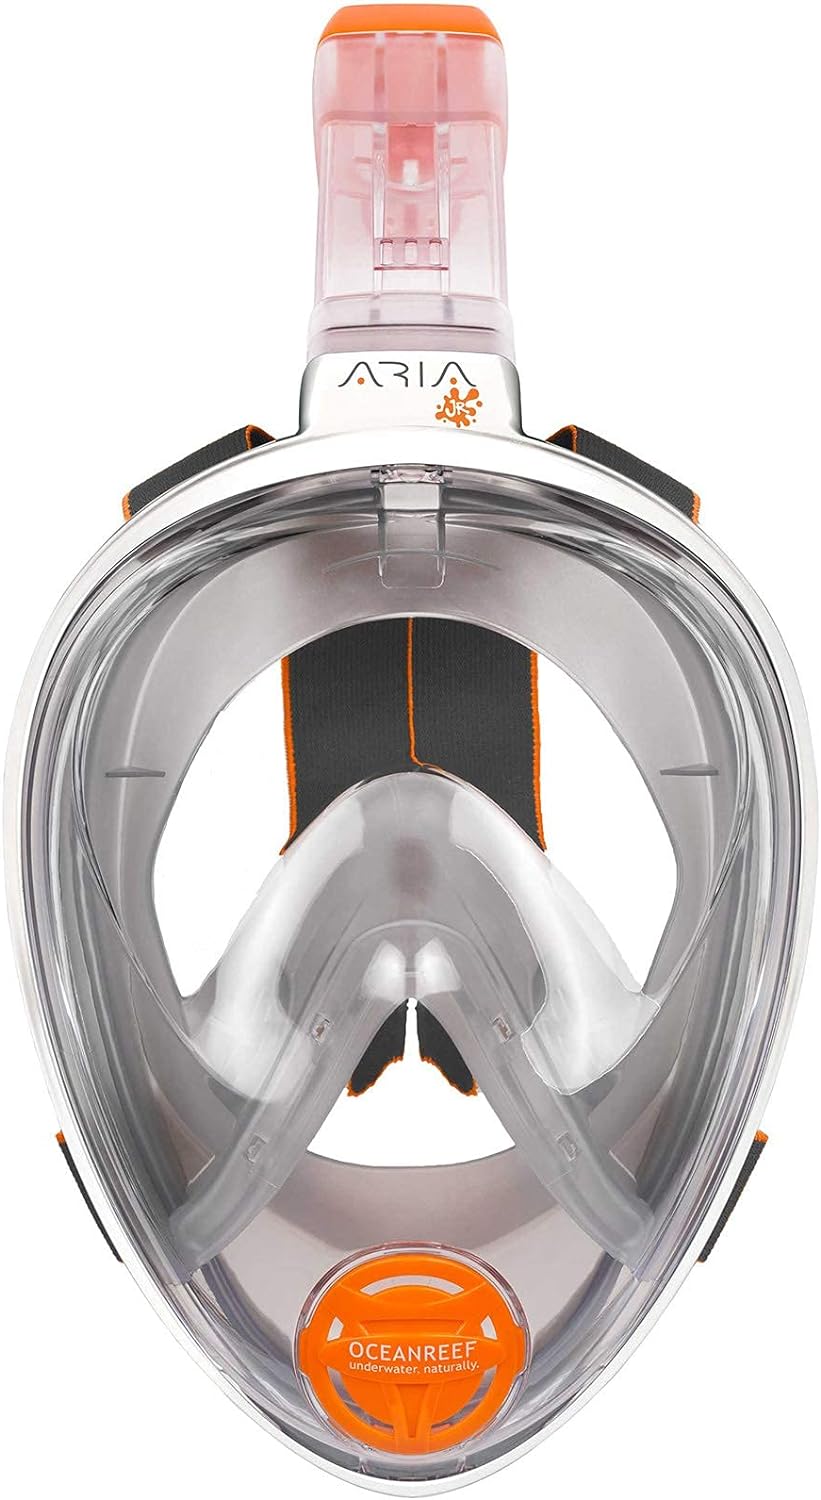 Ocean Reef ARIA JR Full Face Snorkeling Mask